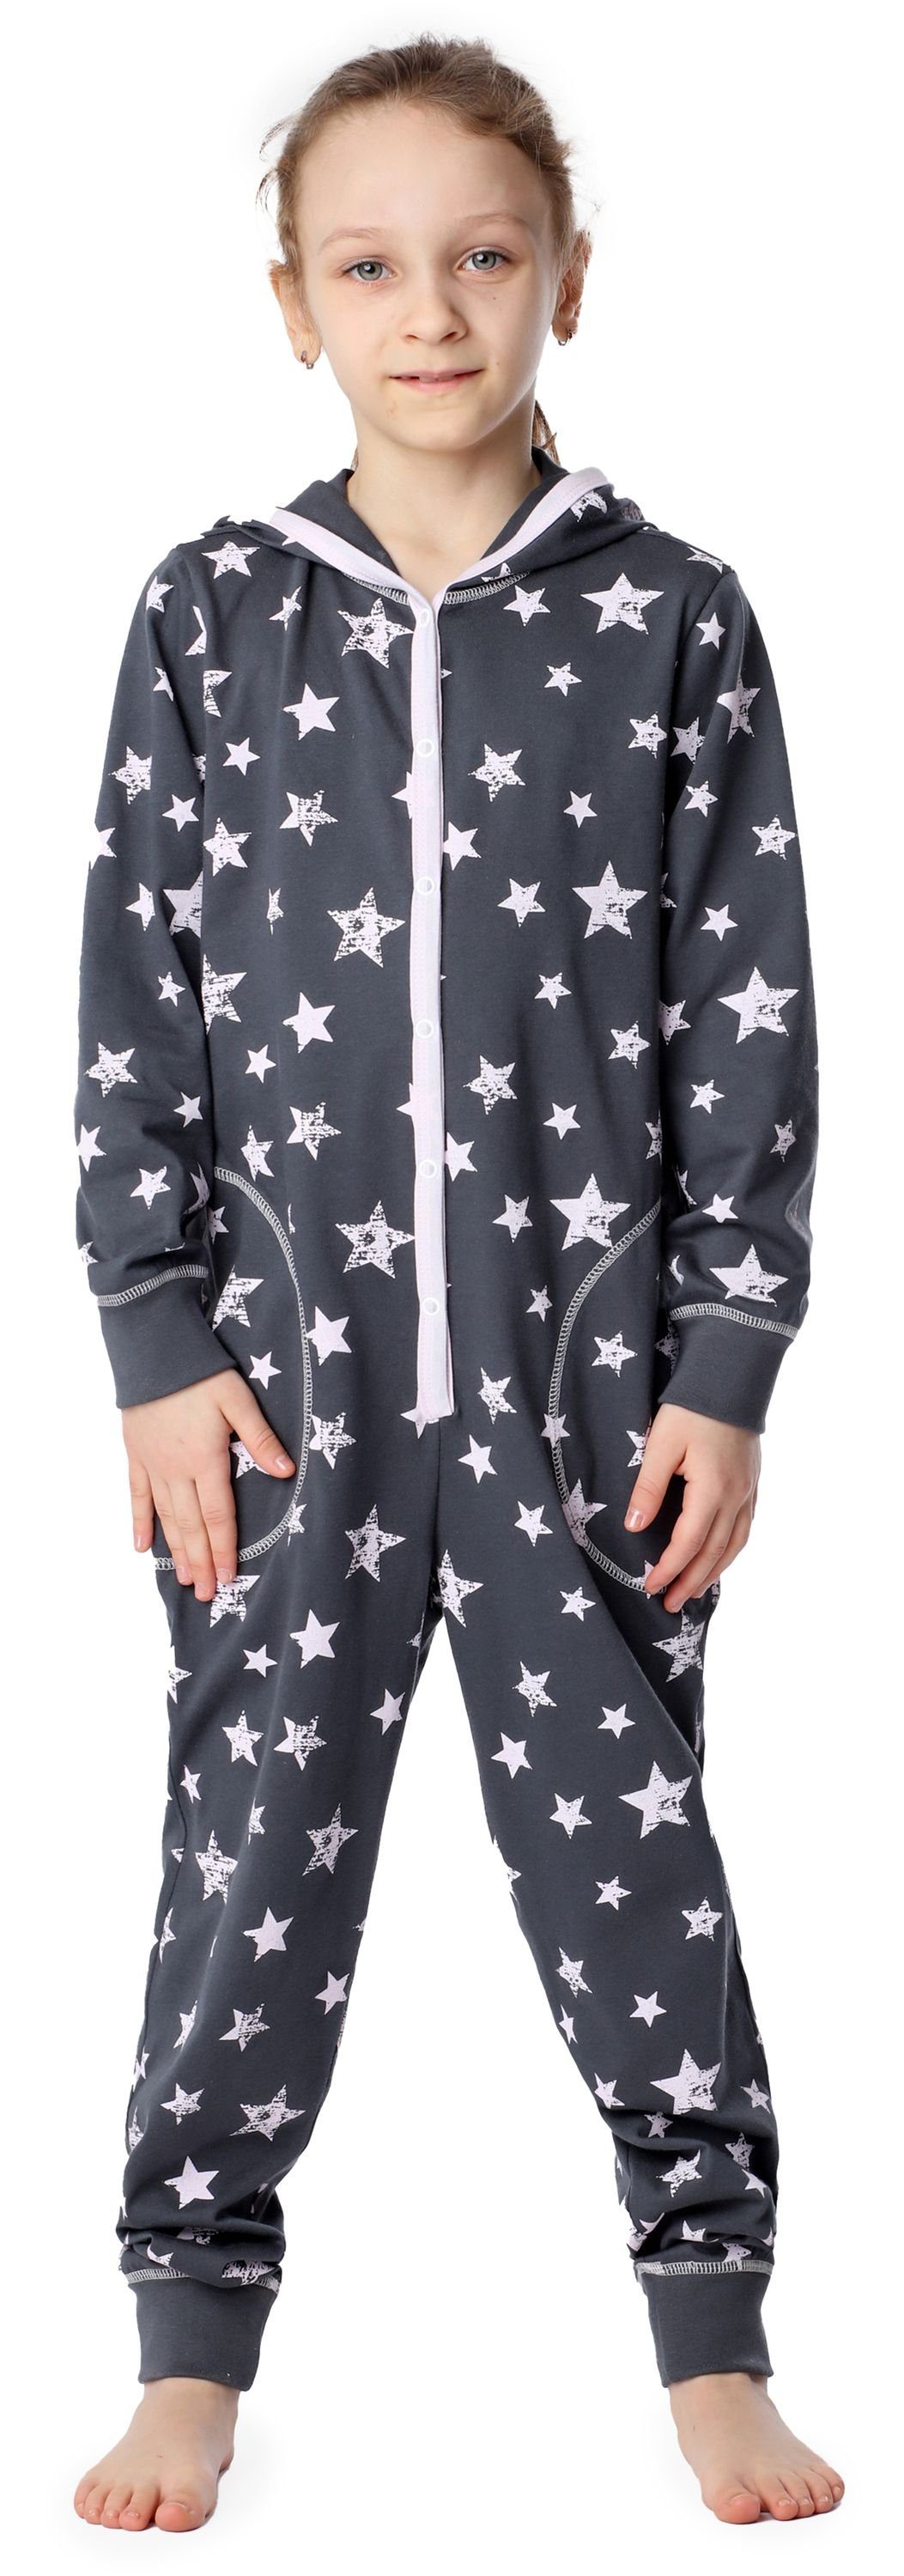 Grau Sterne Schlafanzug Rosa Merry Mädchen mit Style MS10-223 Kapuze Schlafoverall